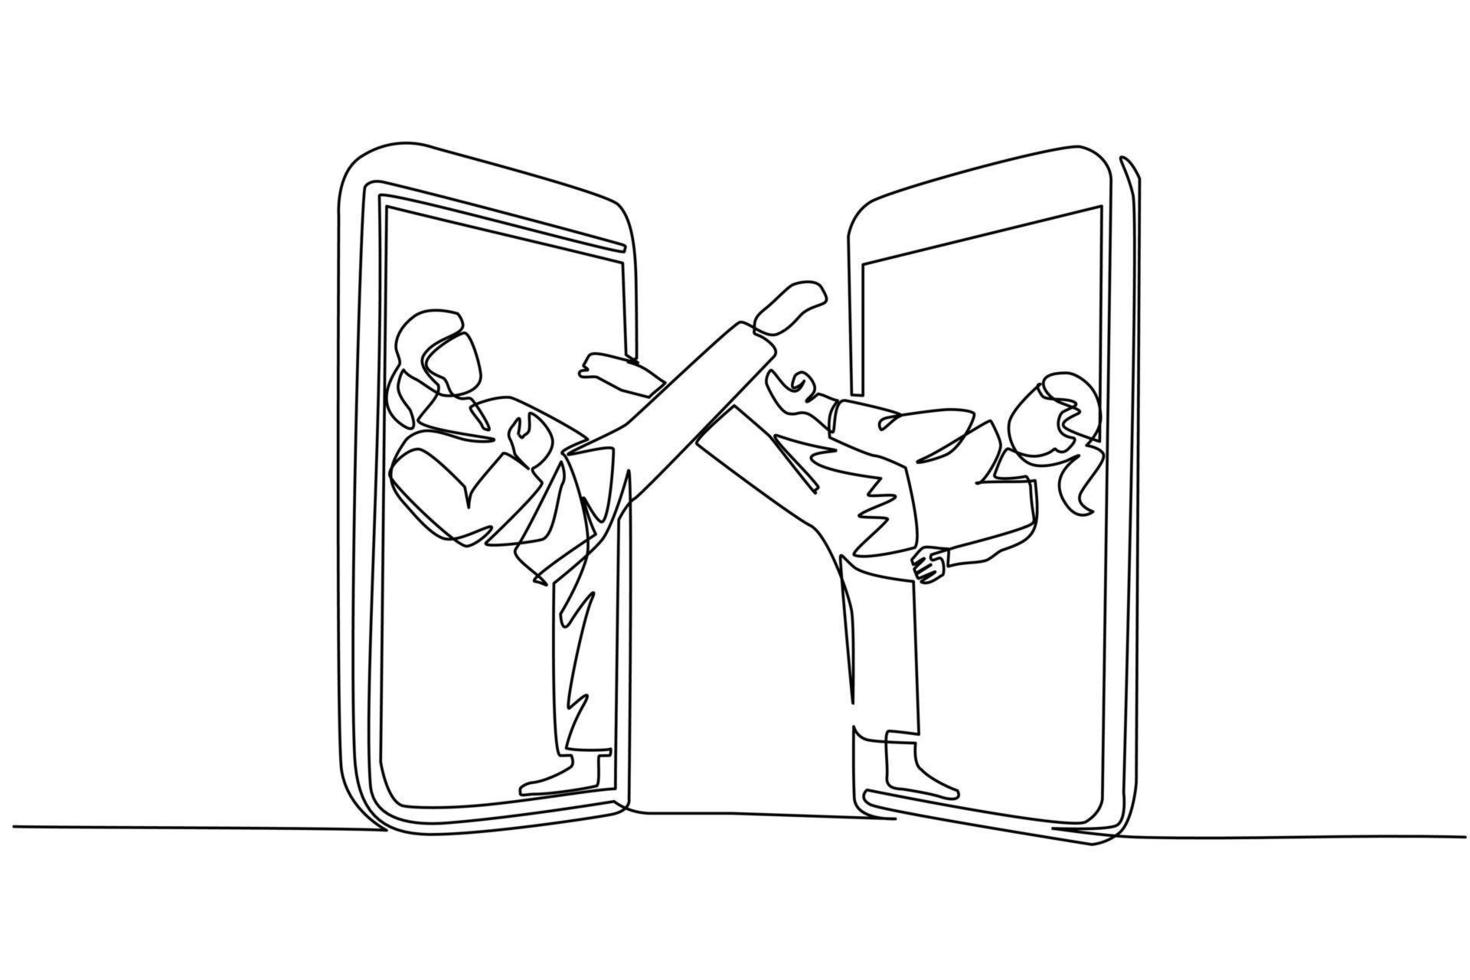 un solo dibujo de una línea de dos luchadoras de karate sale del teléfono celular listo para pelear. luchadores profesionales de karate de pie practicando karate juntos. vector de diseño de dibujo de línea continua